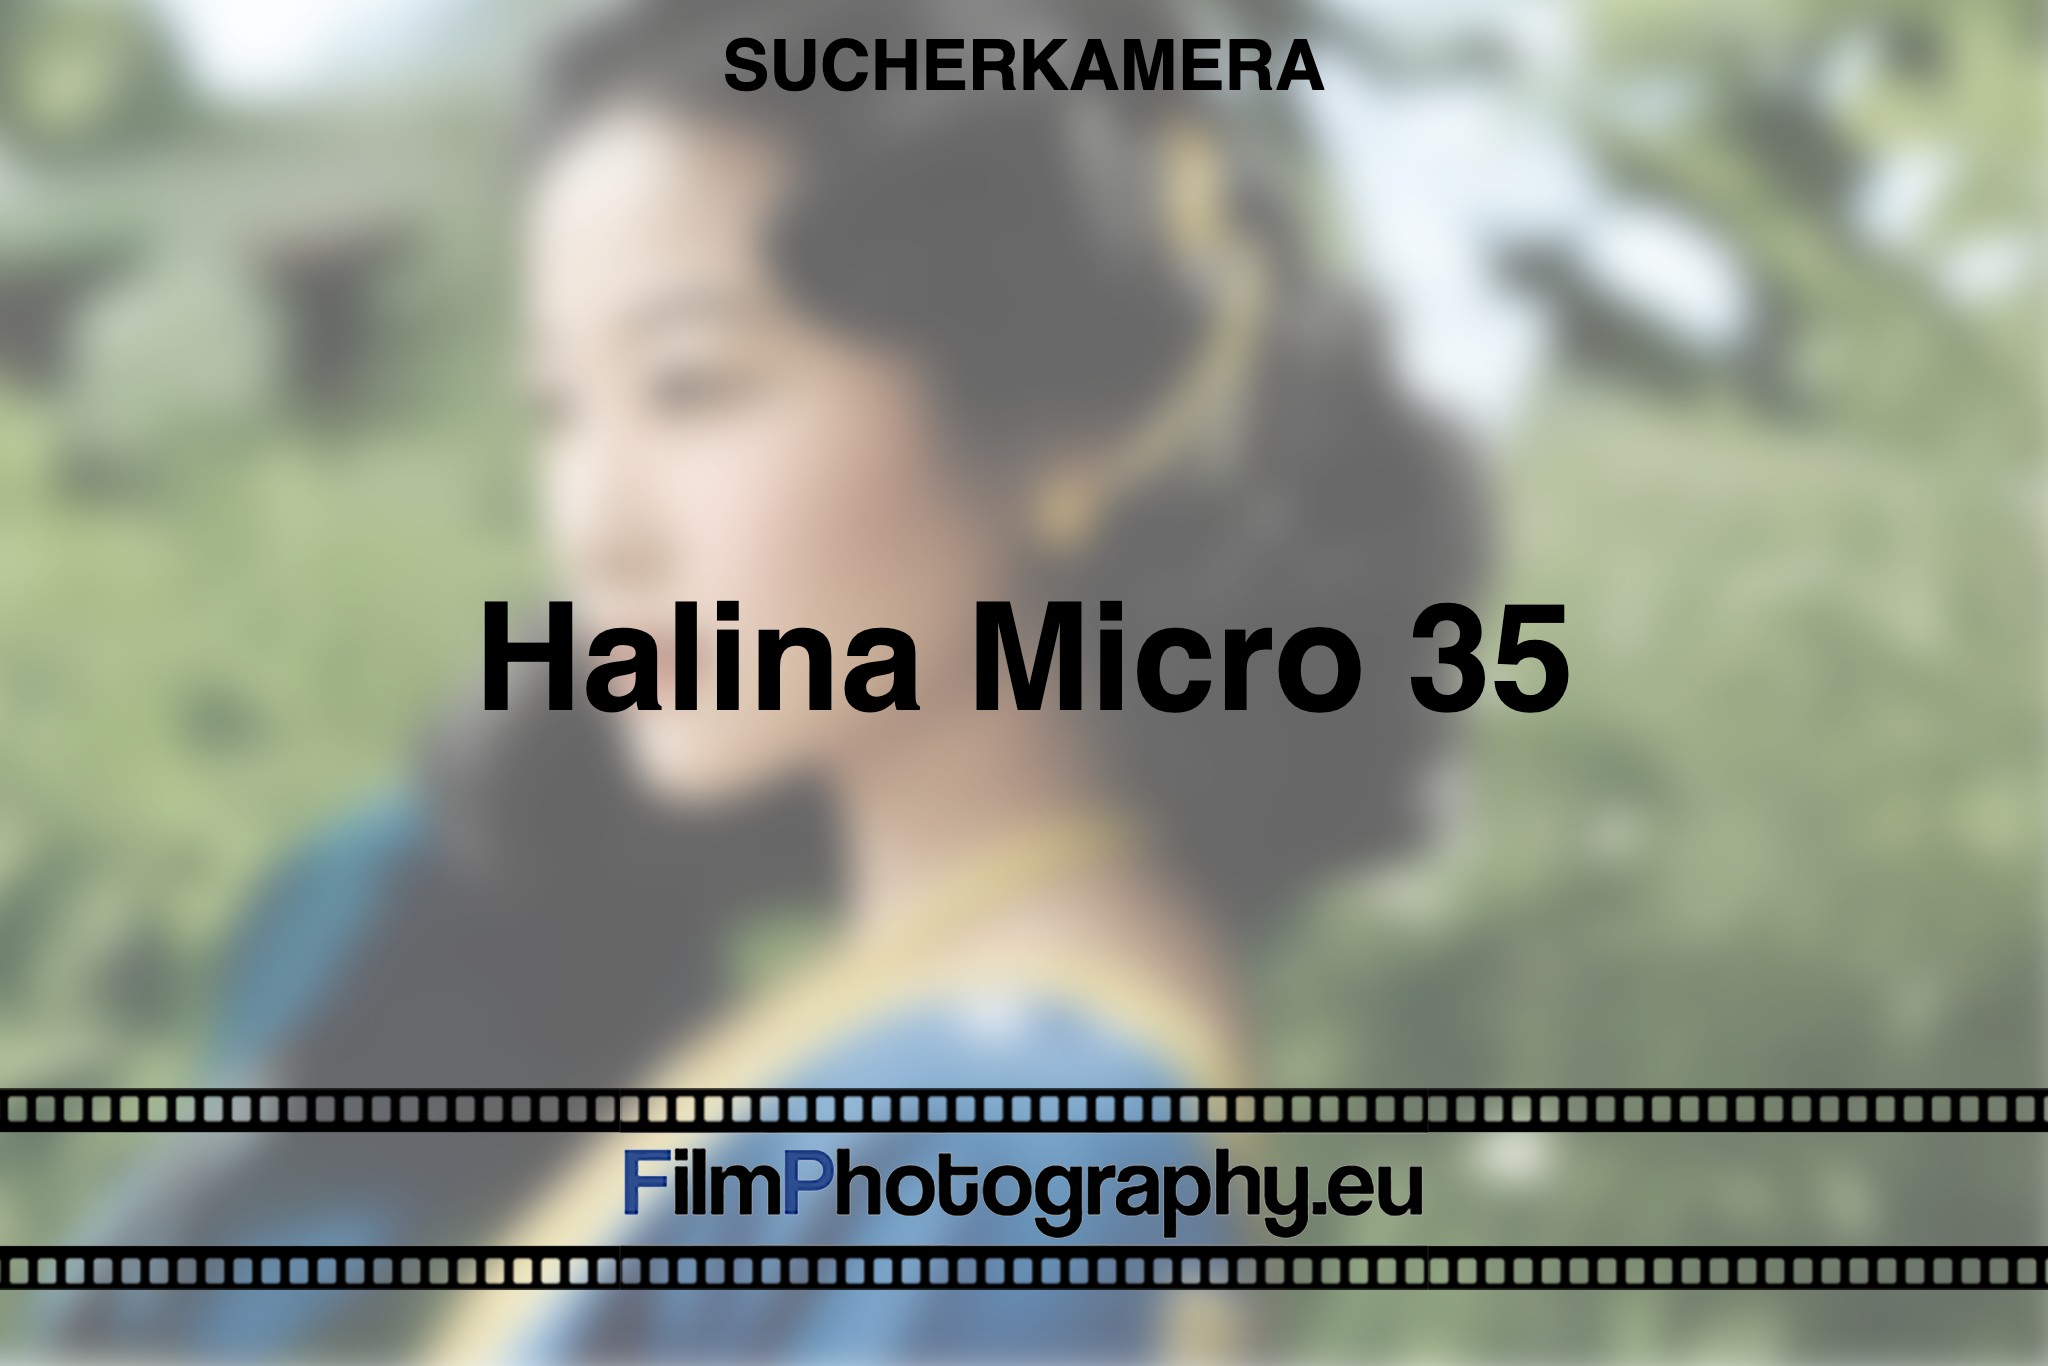 halina-micro-35-sucherkamera-bnv